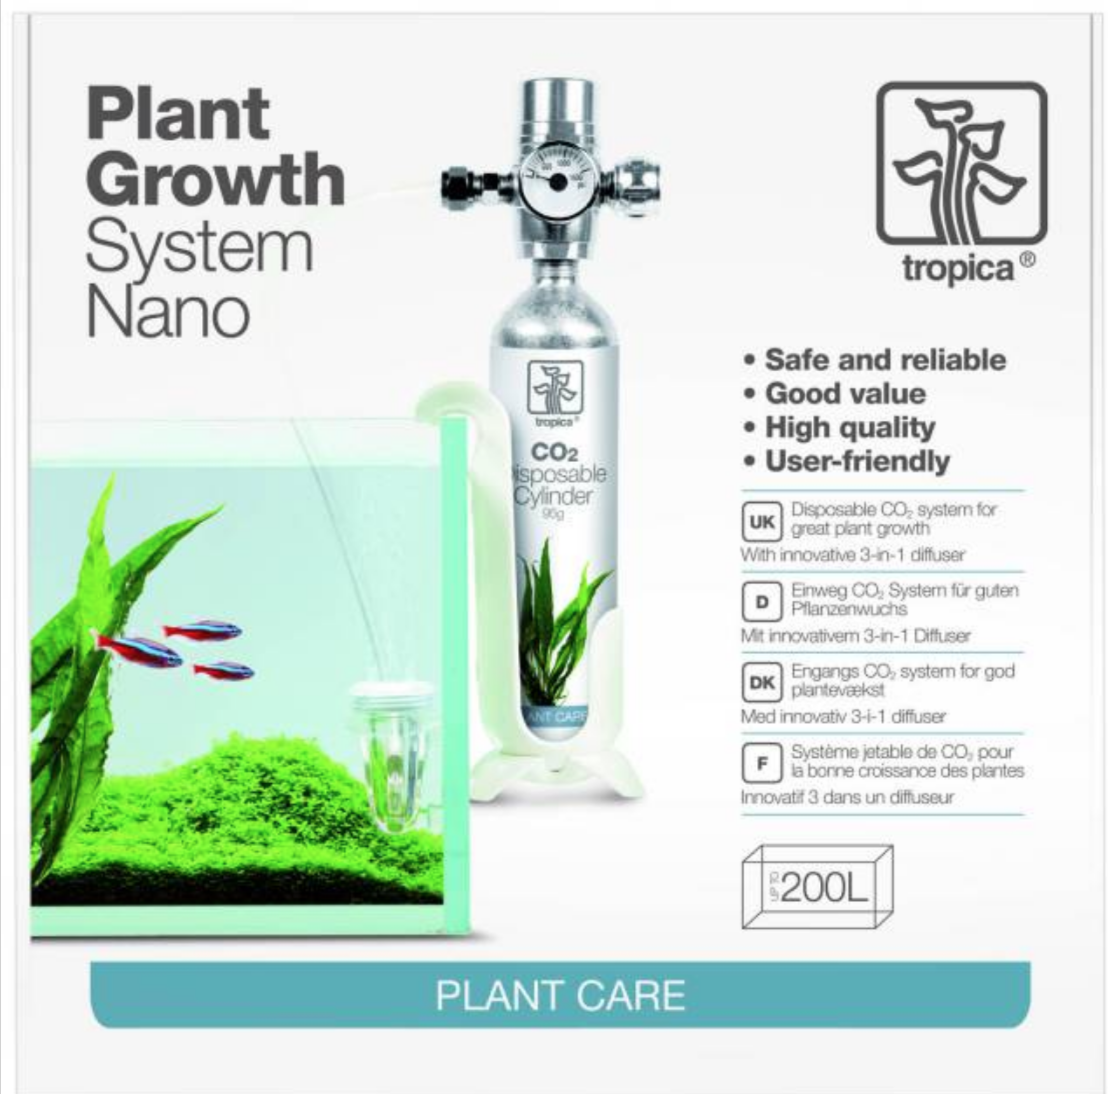 TROPICA PLANT GROWTH SYSTEM NANO AQUARIUM PLANTE KIT SET PACK CARE CO2 200 LITRES POISSON ANIMALERIE EAU 5703249702005 COMASOUND KARTEL CSK ONLINE